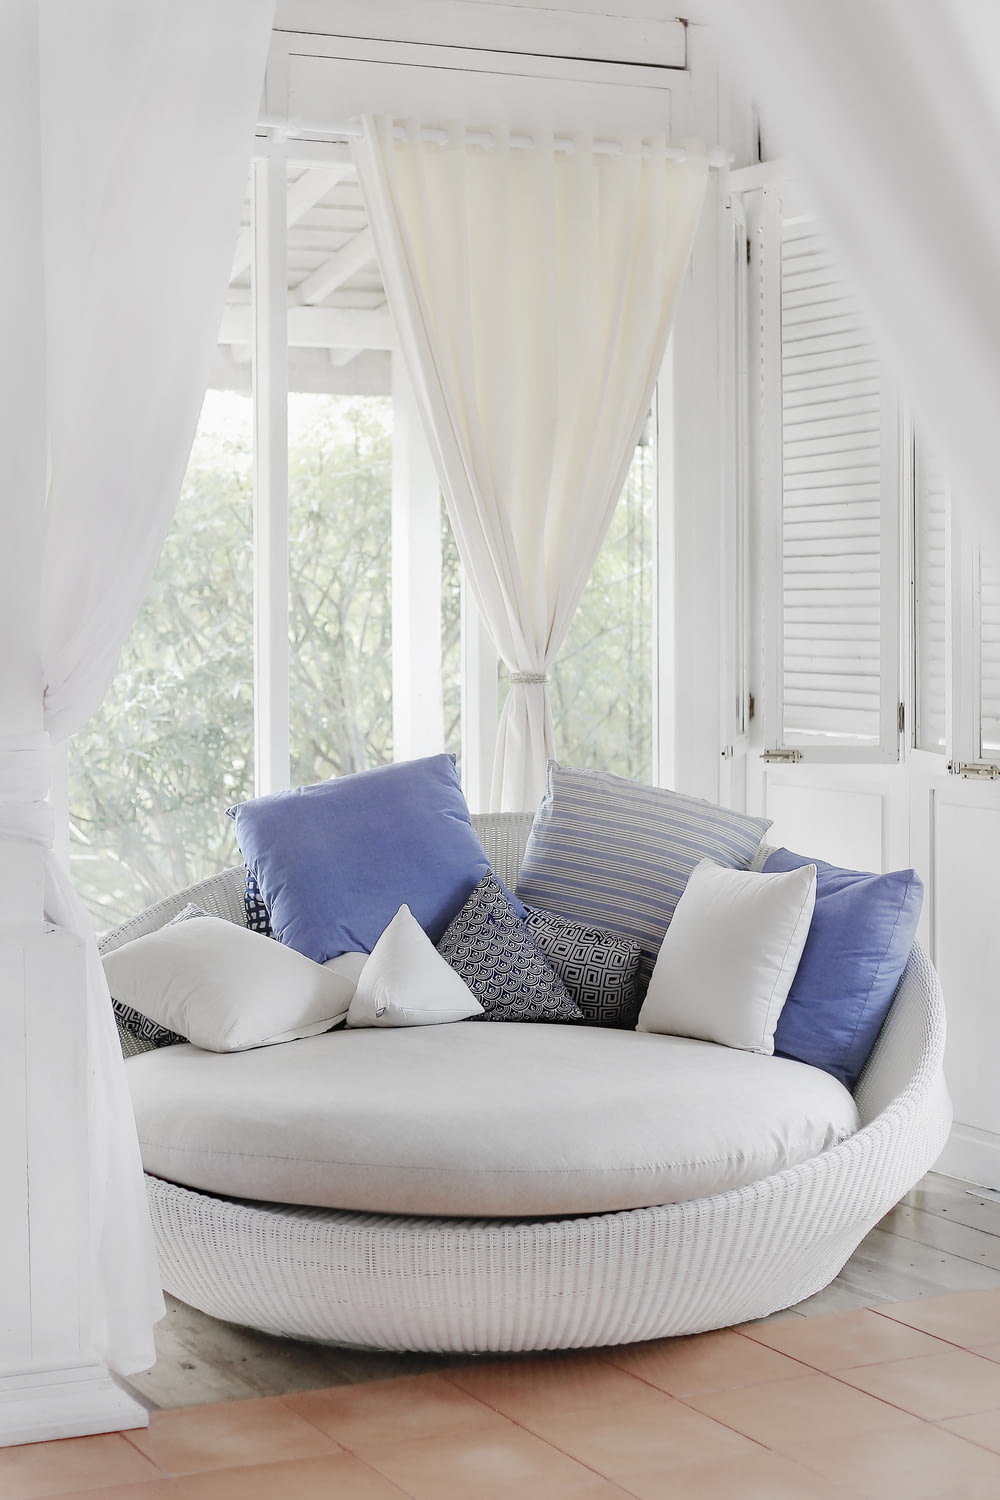 white cuddle chair and throw pillows near window